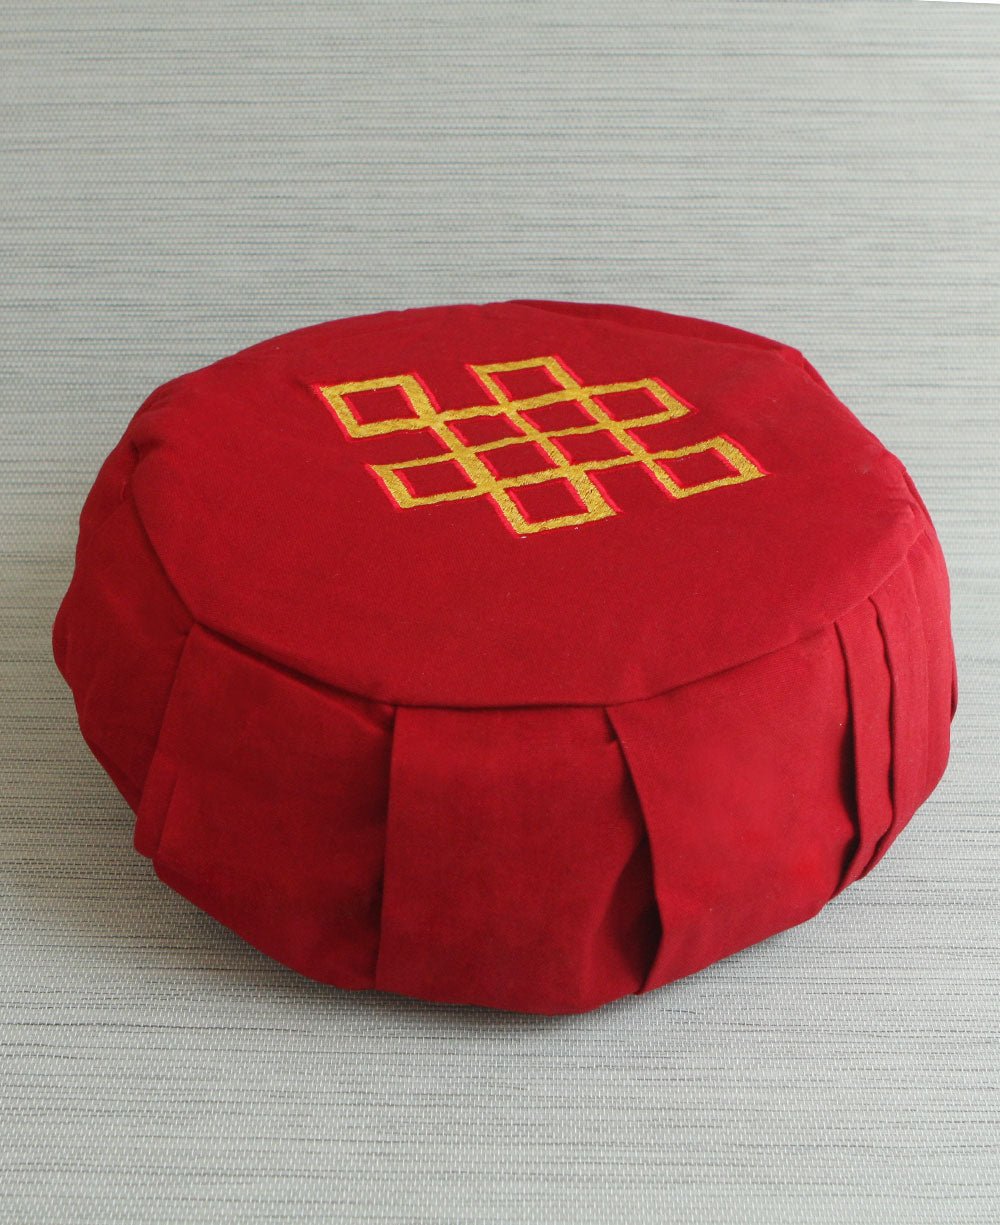 Zafu Meditation Cushion, Endless Knot Embroidery - Massage Cushions